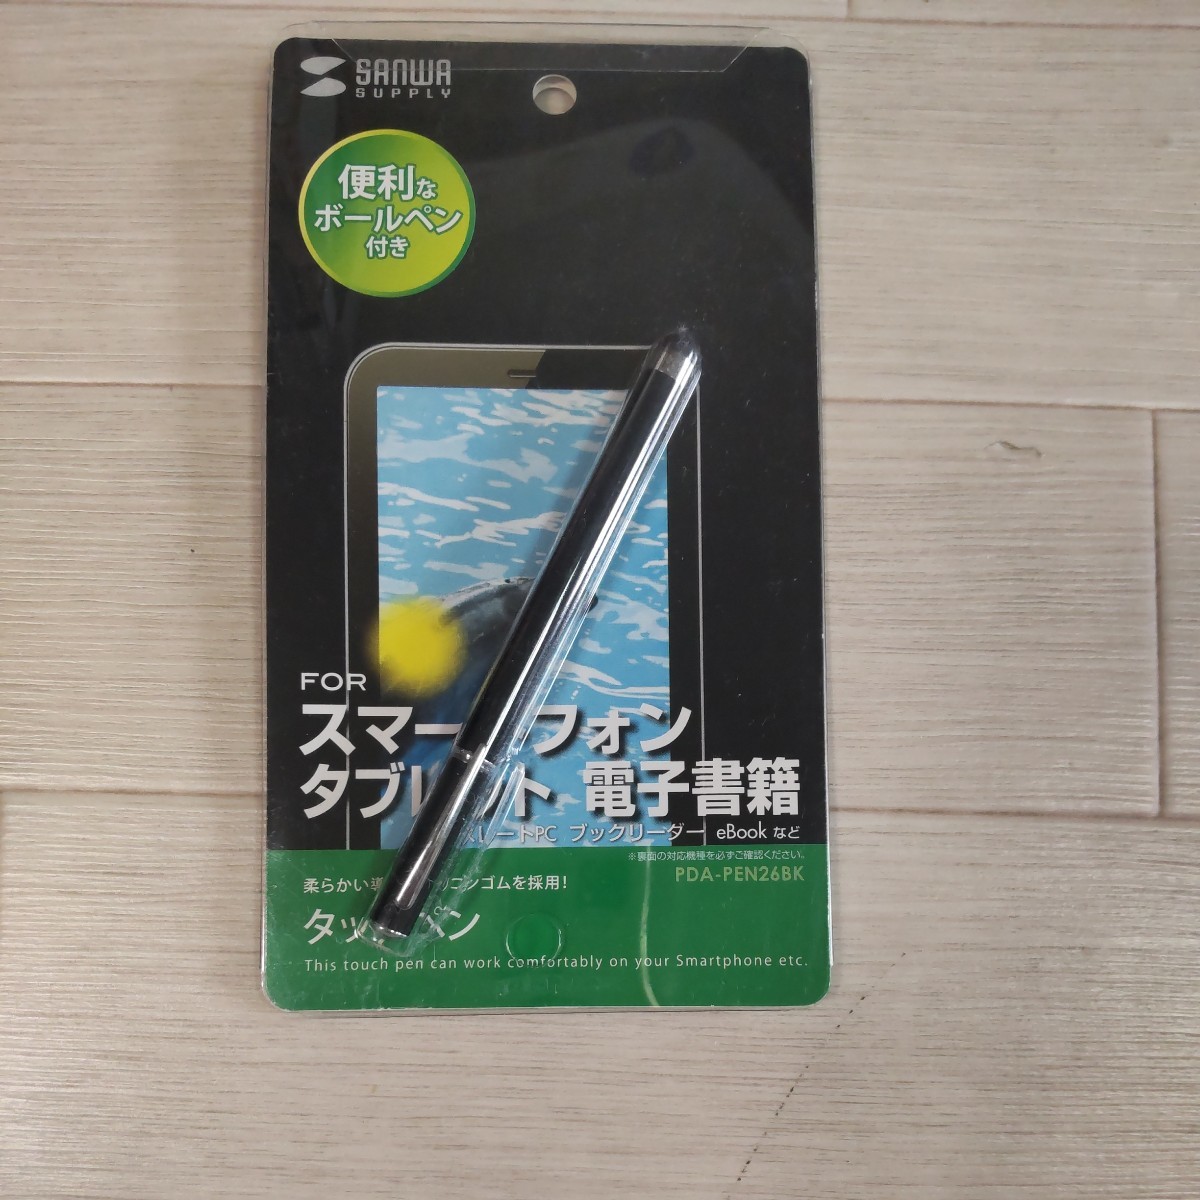 サンワサプライ スマートフォン&タブレット用タッチペン 黒 PDA-PEN26BK